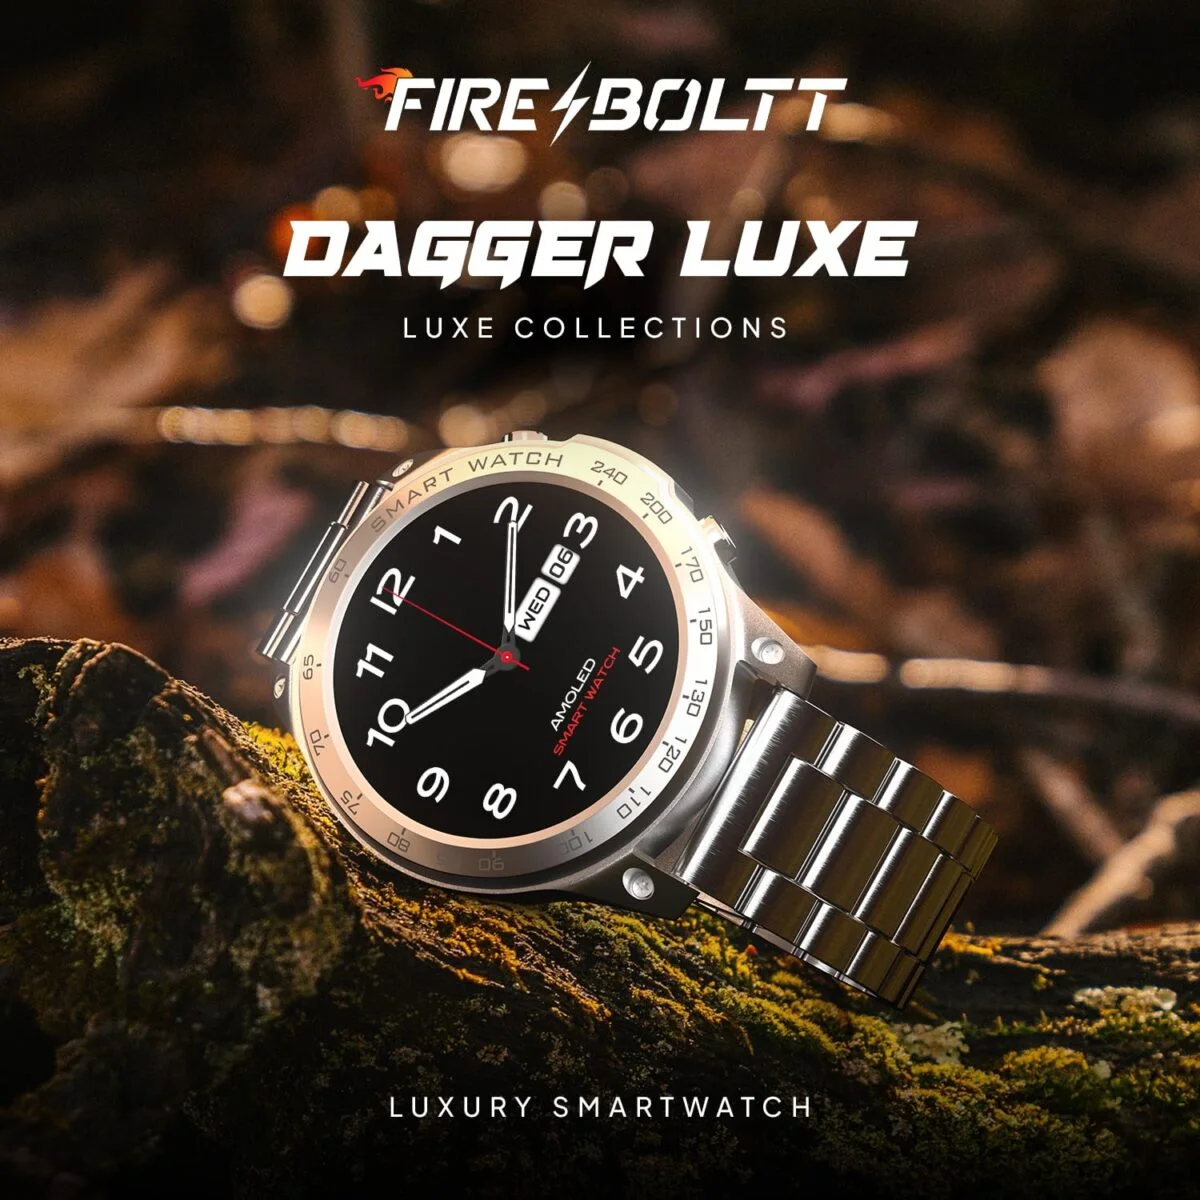 Fire boltt dagger luxe 3 fire-boltt dagger luxe 1. 43 super amoled display luxury smartwatch